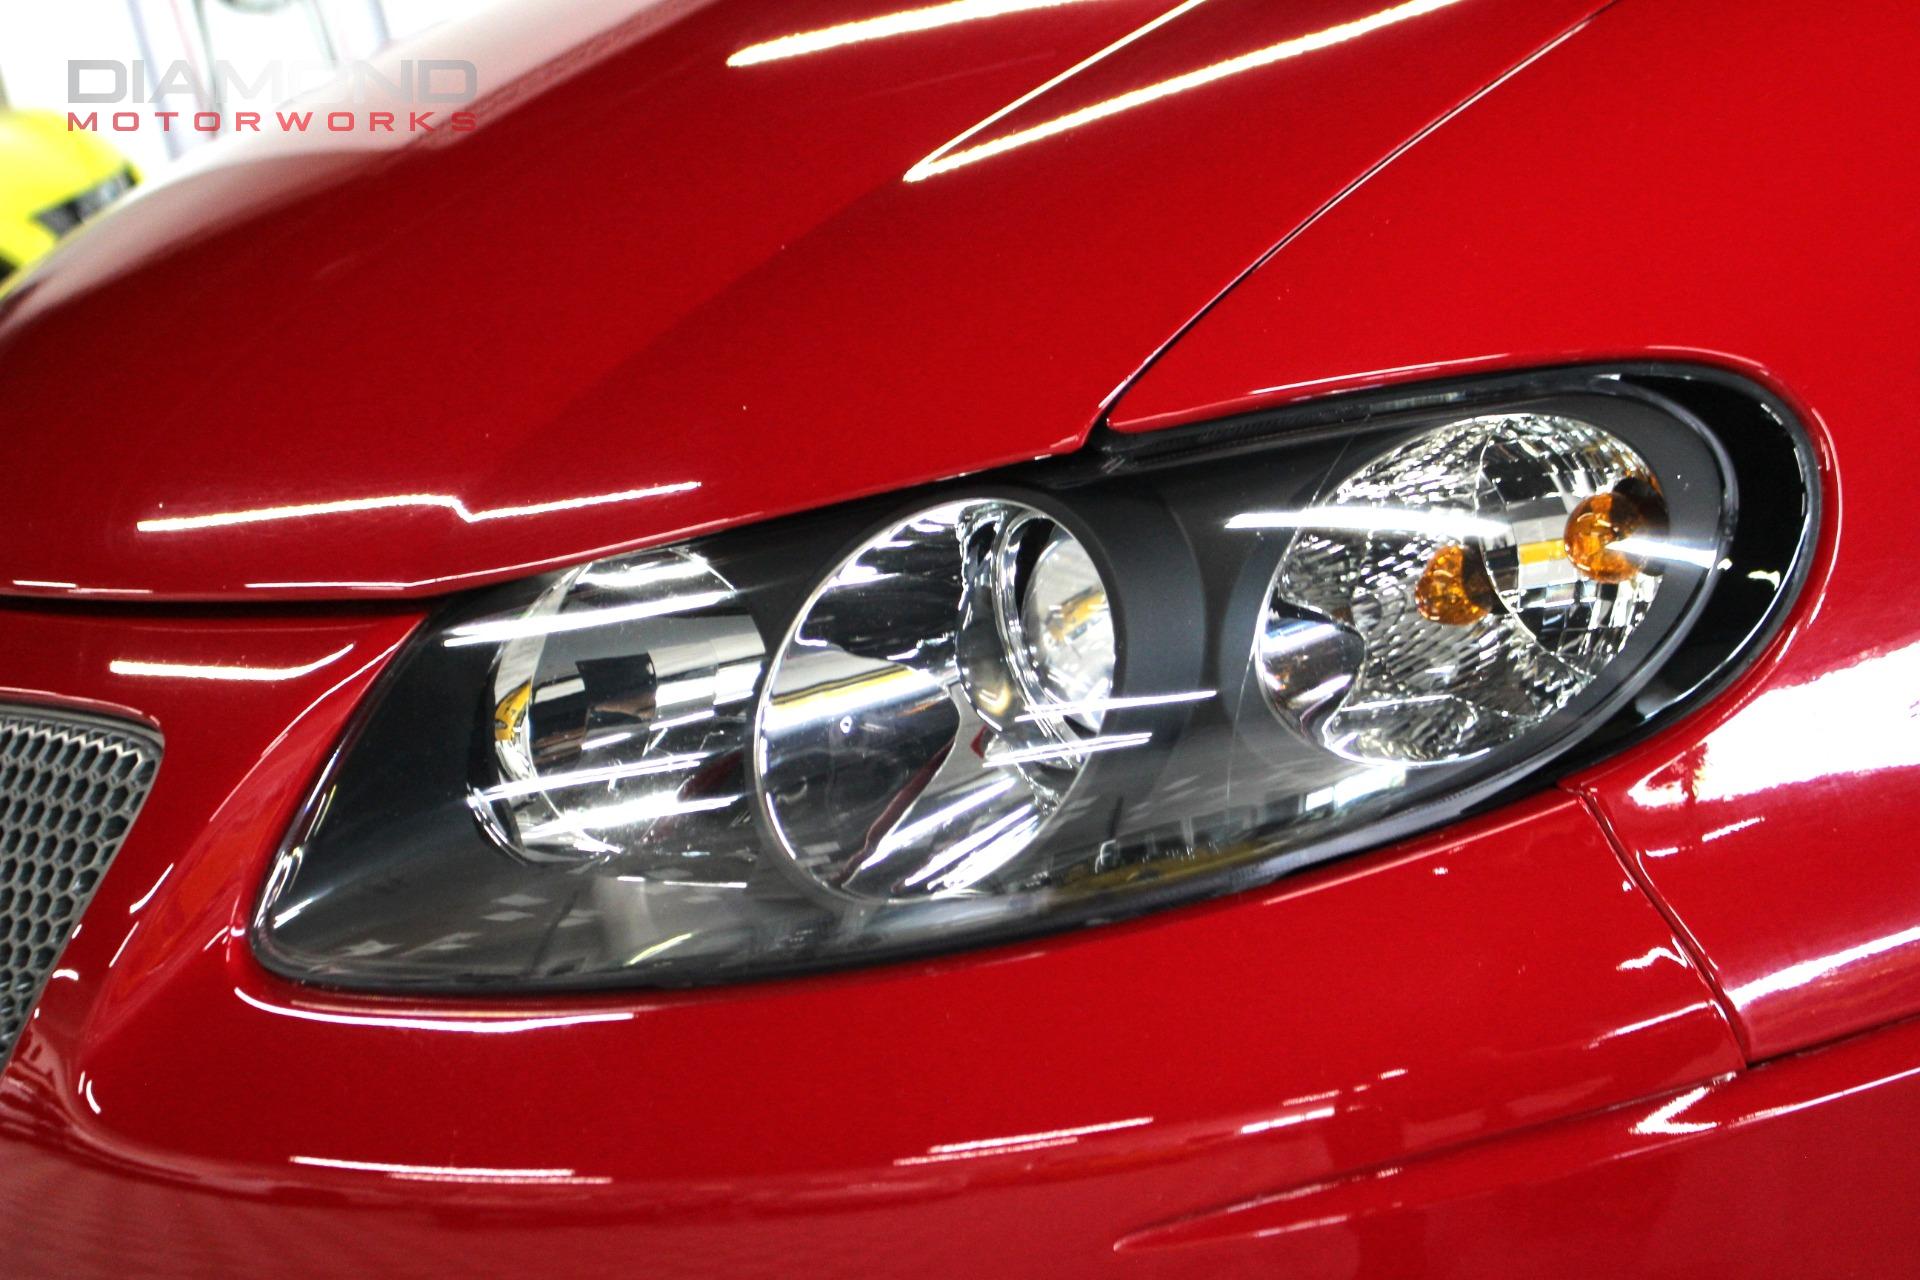 2004-2006 Pontiac GTO  Used vehicle spotlight - Autoblog